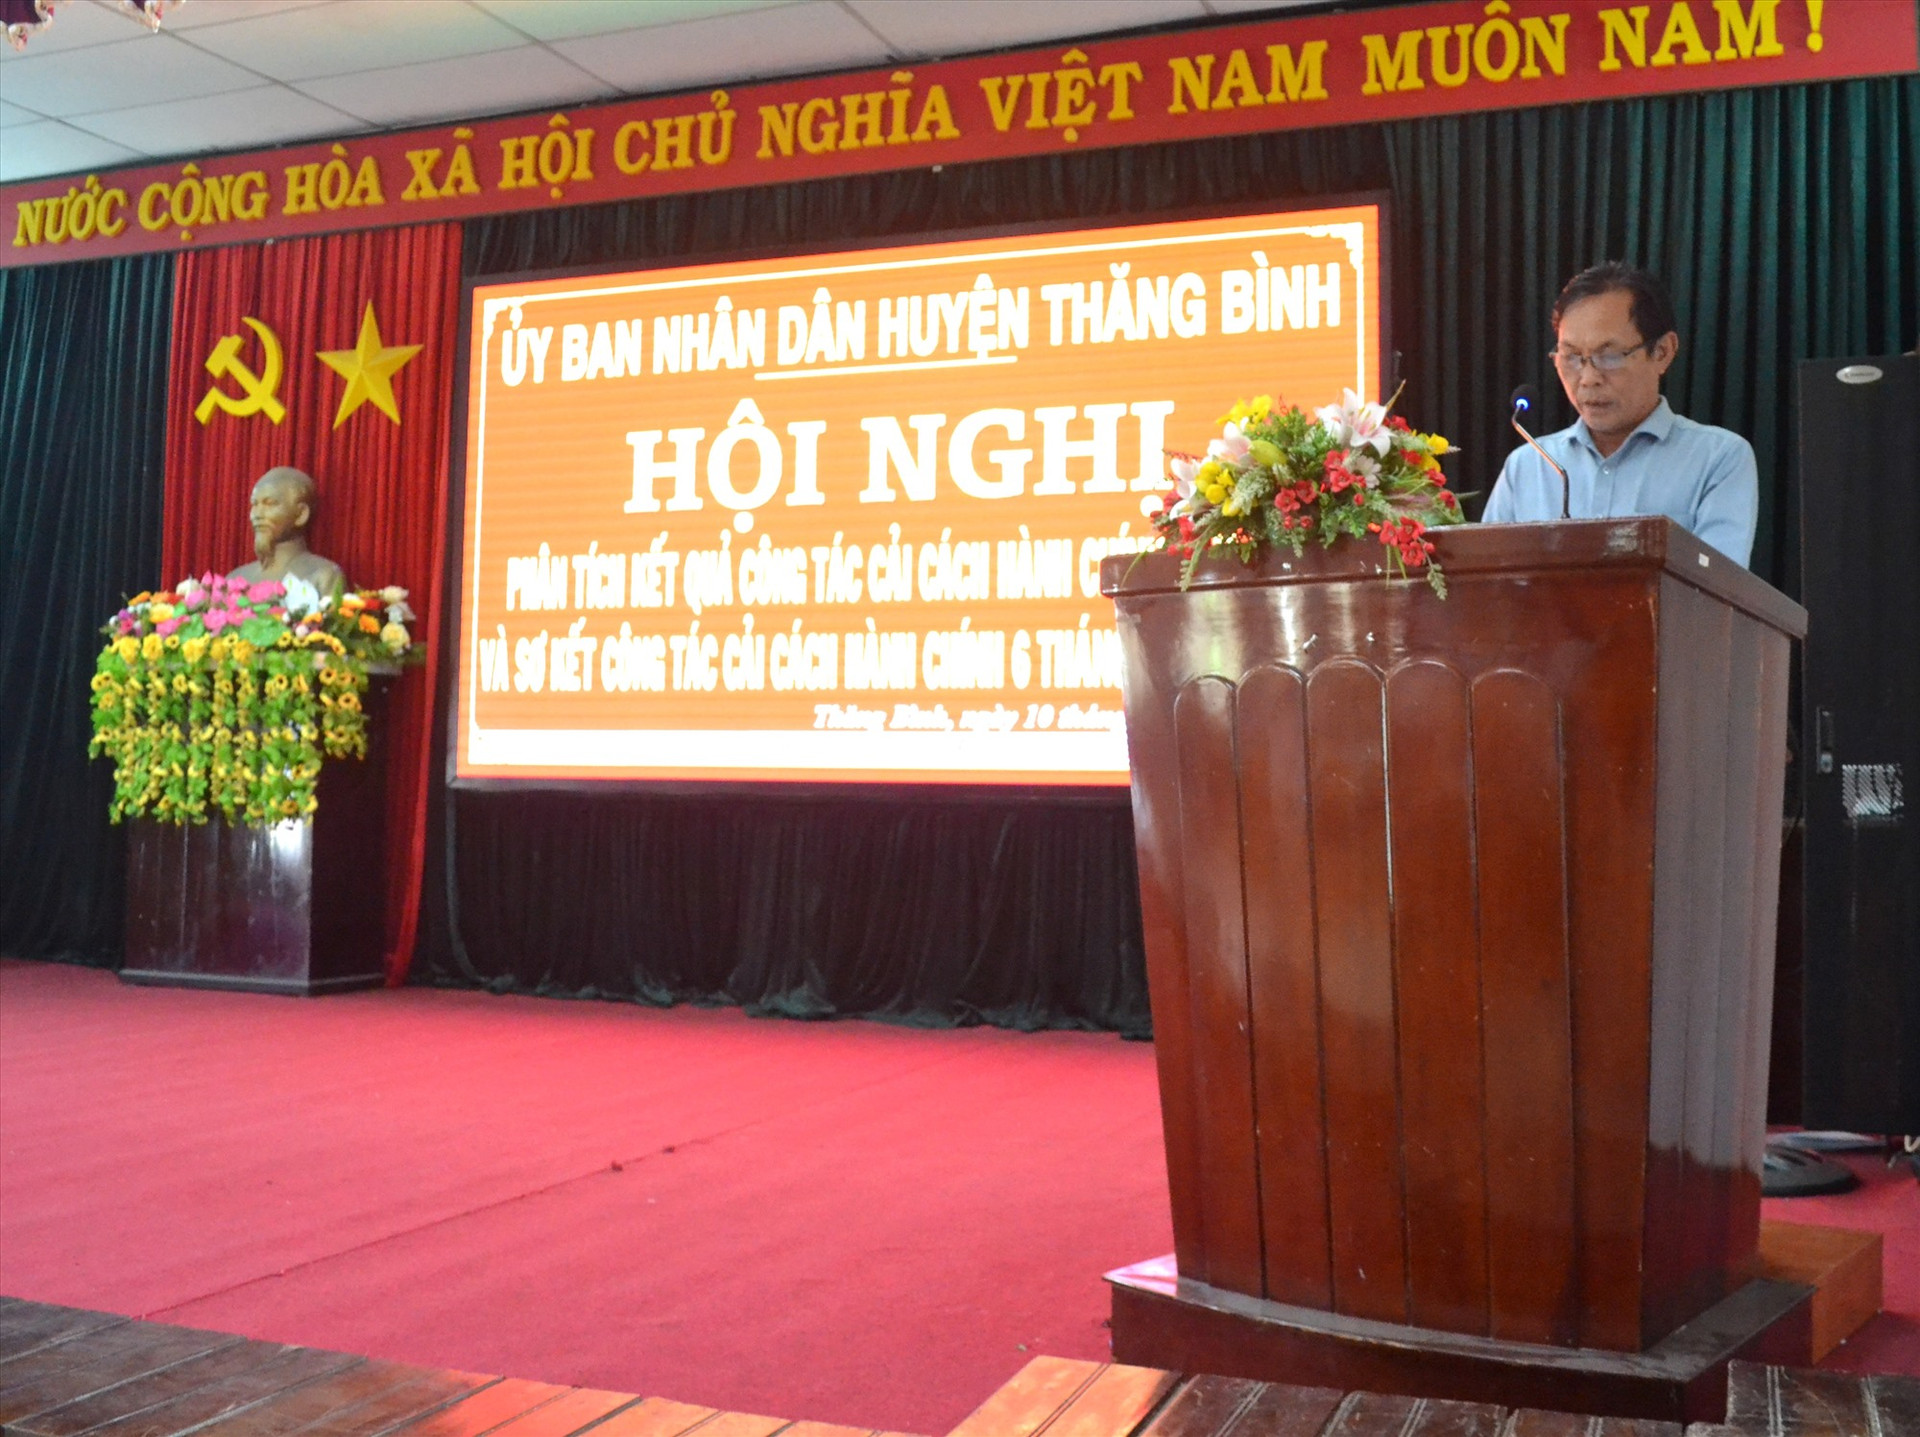 Ông Nguyễn Văn Húy - Phó Chủ tịch UBND huyện Thăng Bình phát biểu. Ảnh: Q.VIỆT